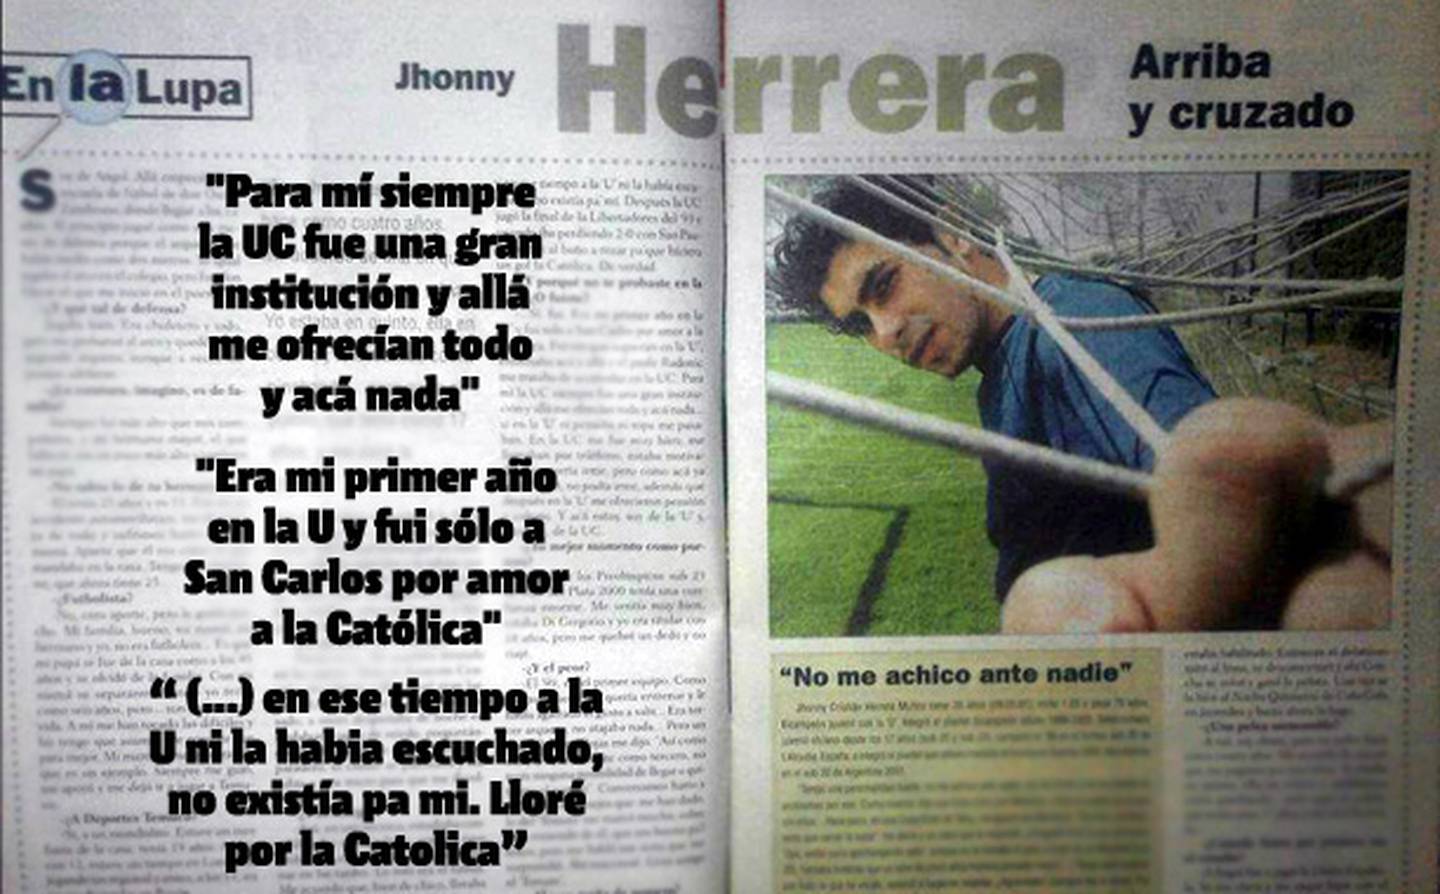 La entrevista de Johnny Herrera a Revista Triunfo